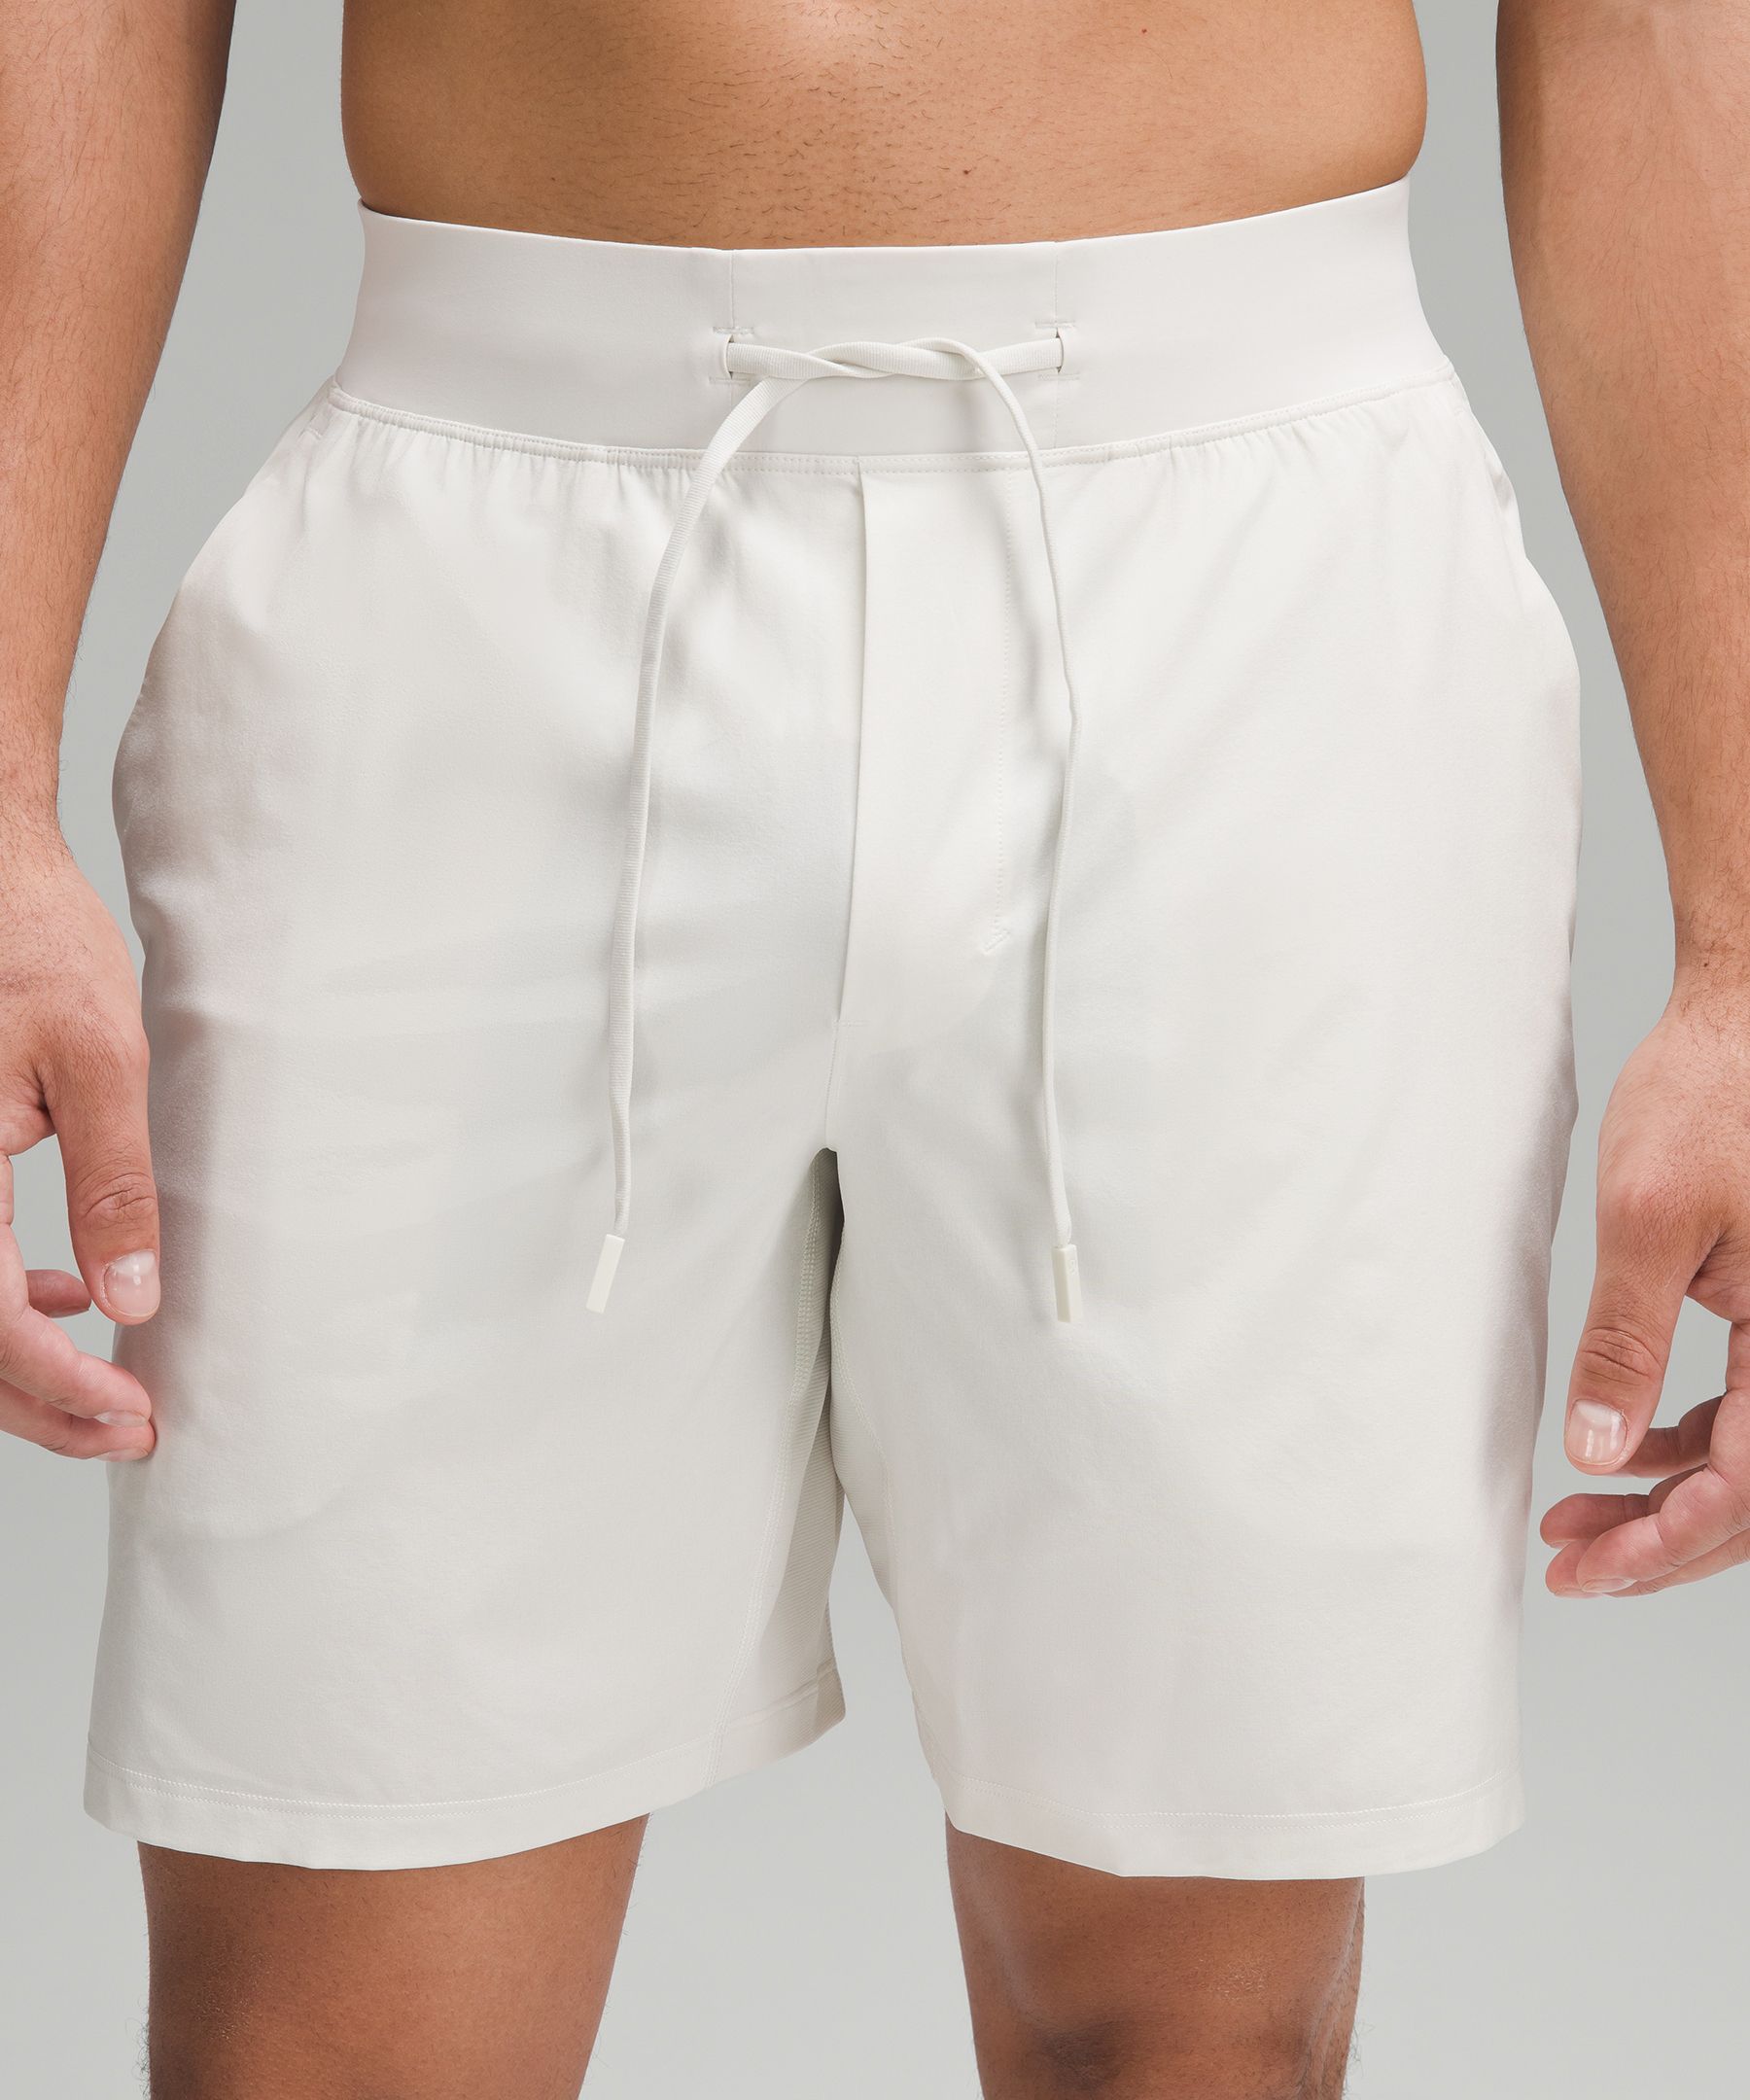 White Training Shorts - Men's T.H.E. Linerless Short 7 - Size S | Lululemon